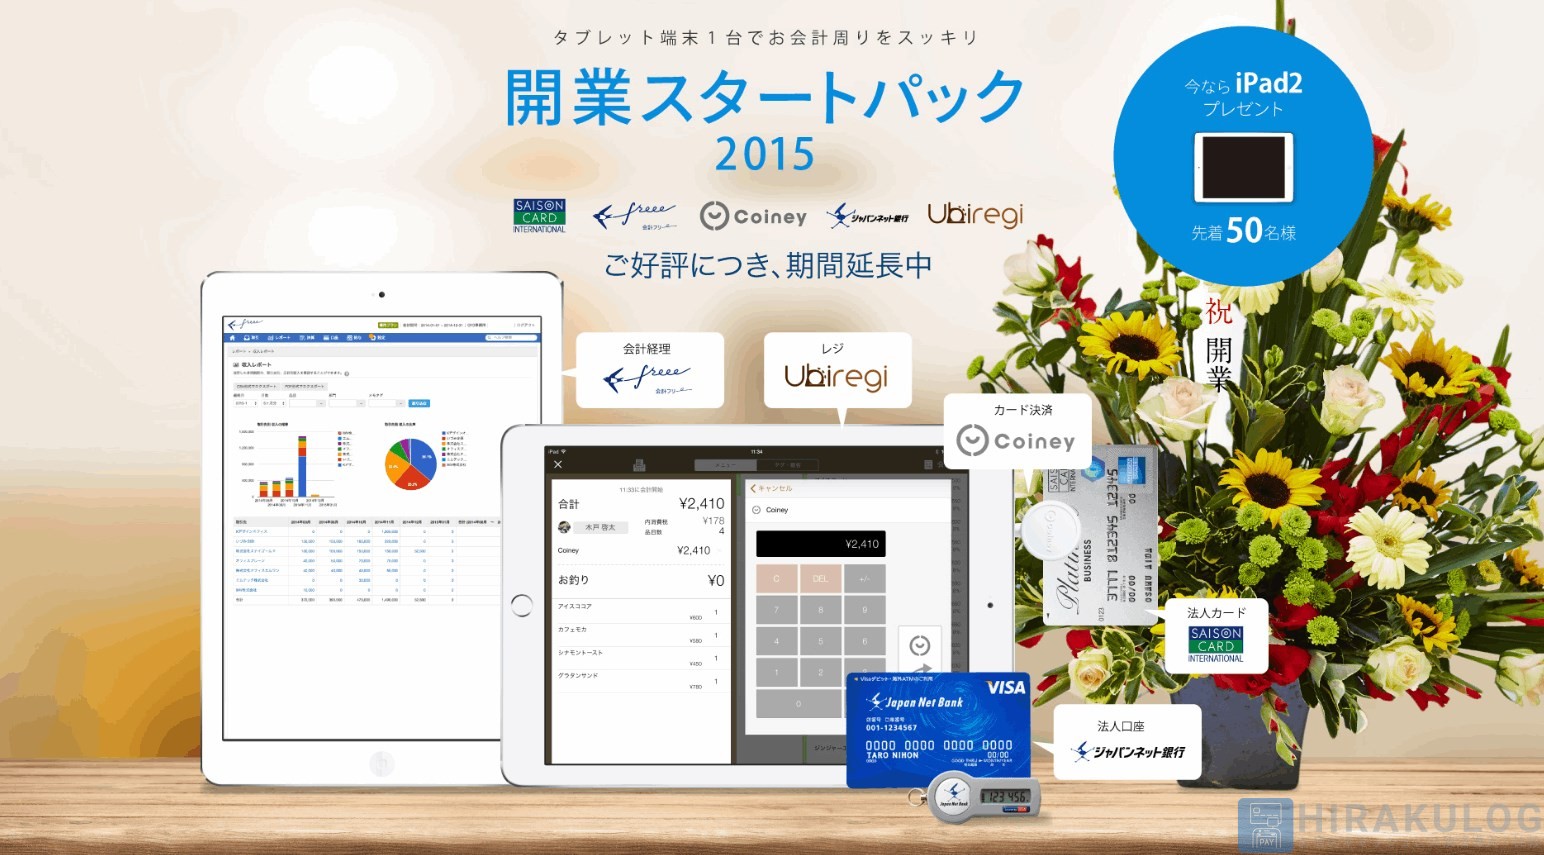 開業向けのパッケージキャンペーン
【申込期間：2015/4/23(木)12:00～7/15(水)】